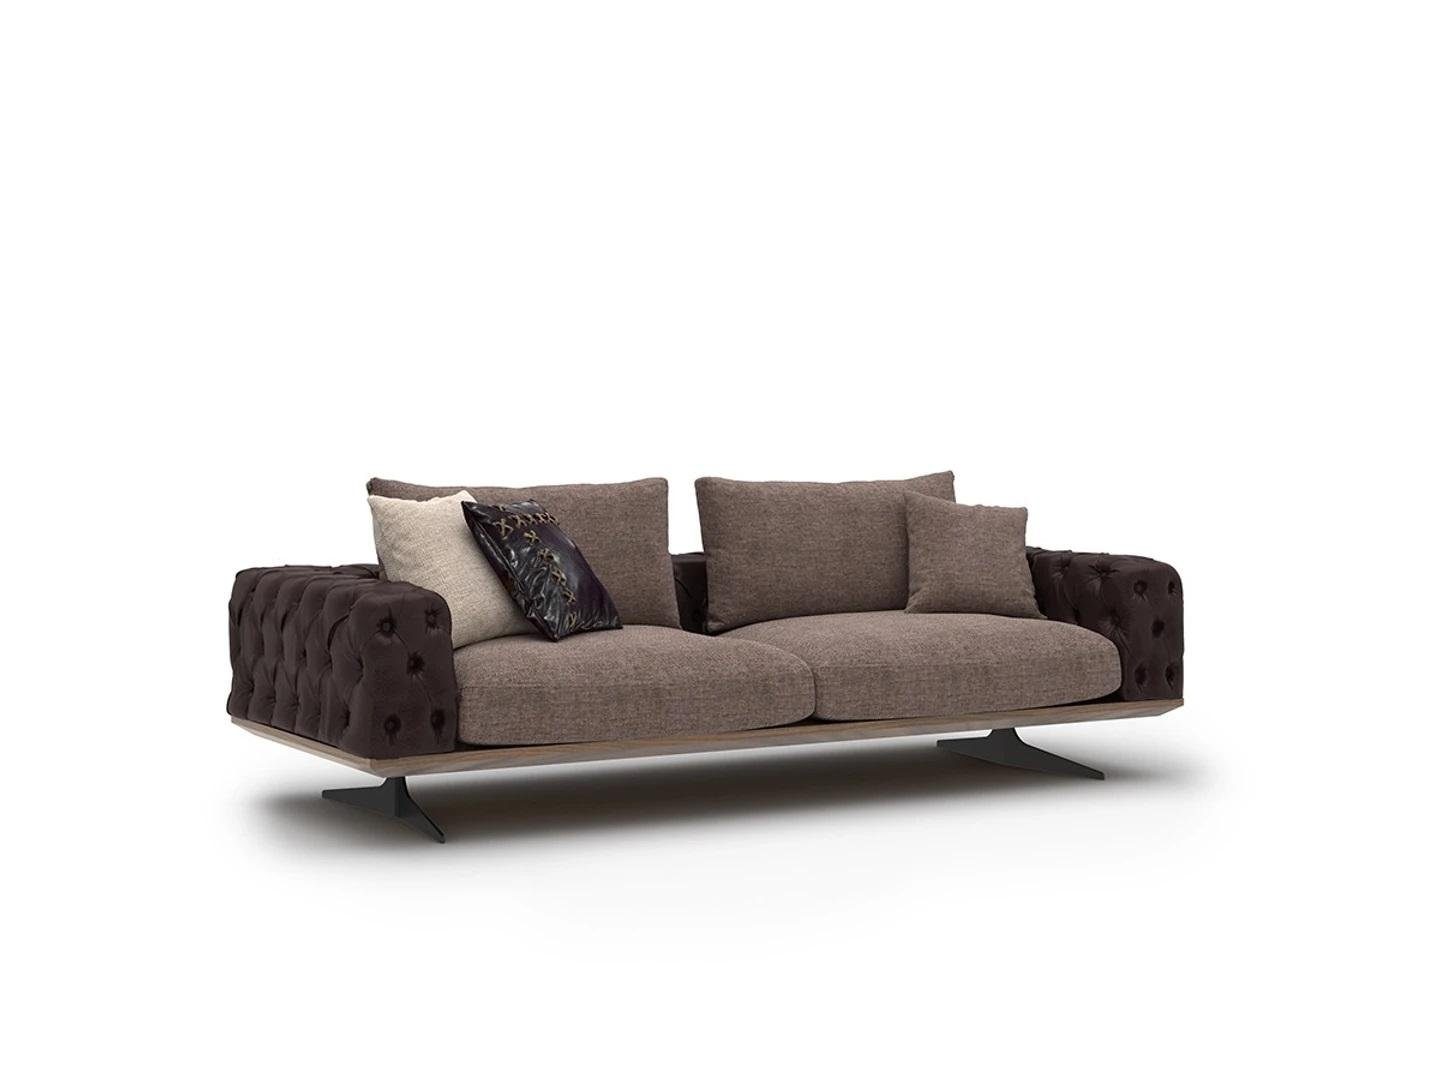 JVmoebel 3-Sitzer Luxus Wohnzimmer Sofa Dreisitzer Modern Design Polstersofas Neu, 1 Teile, Made in Europa